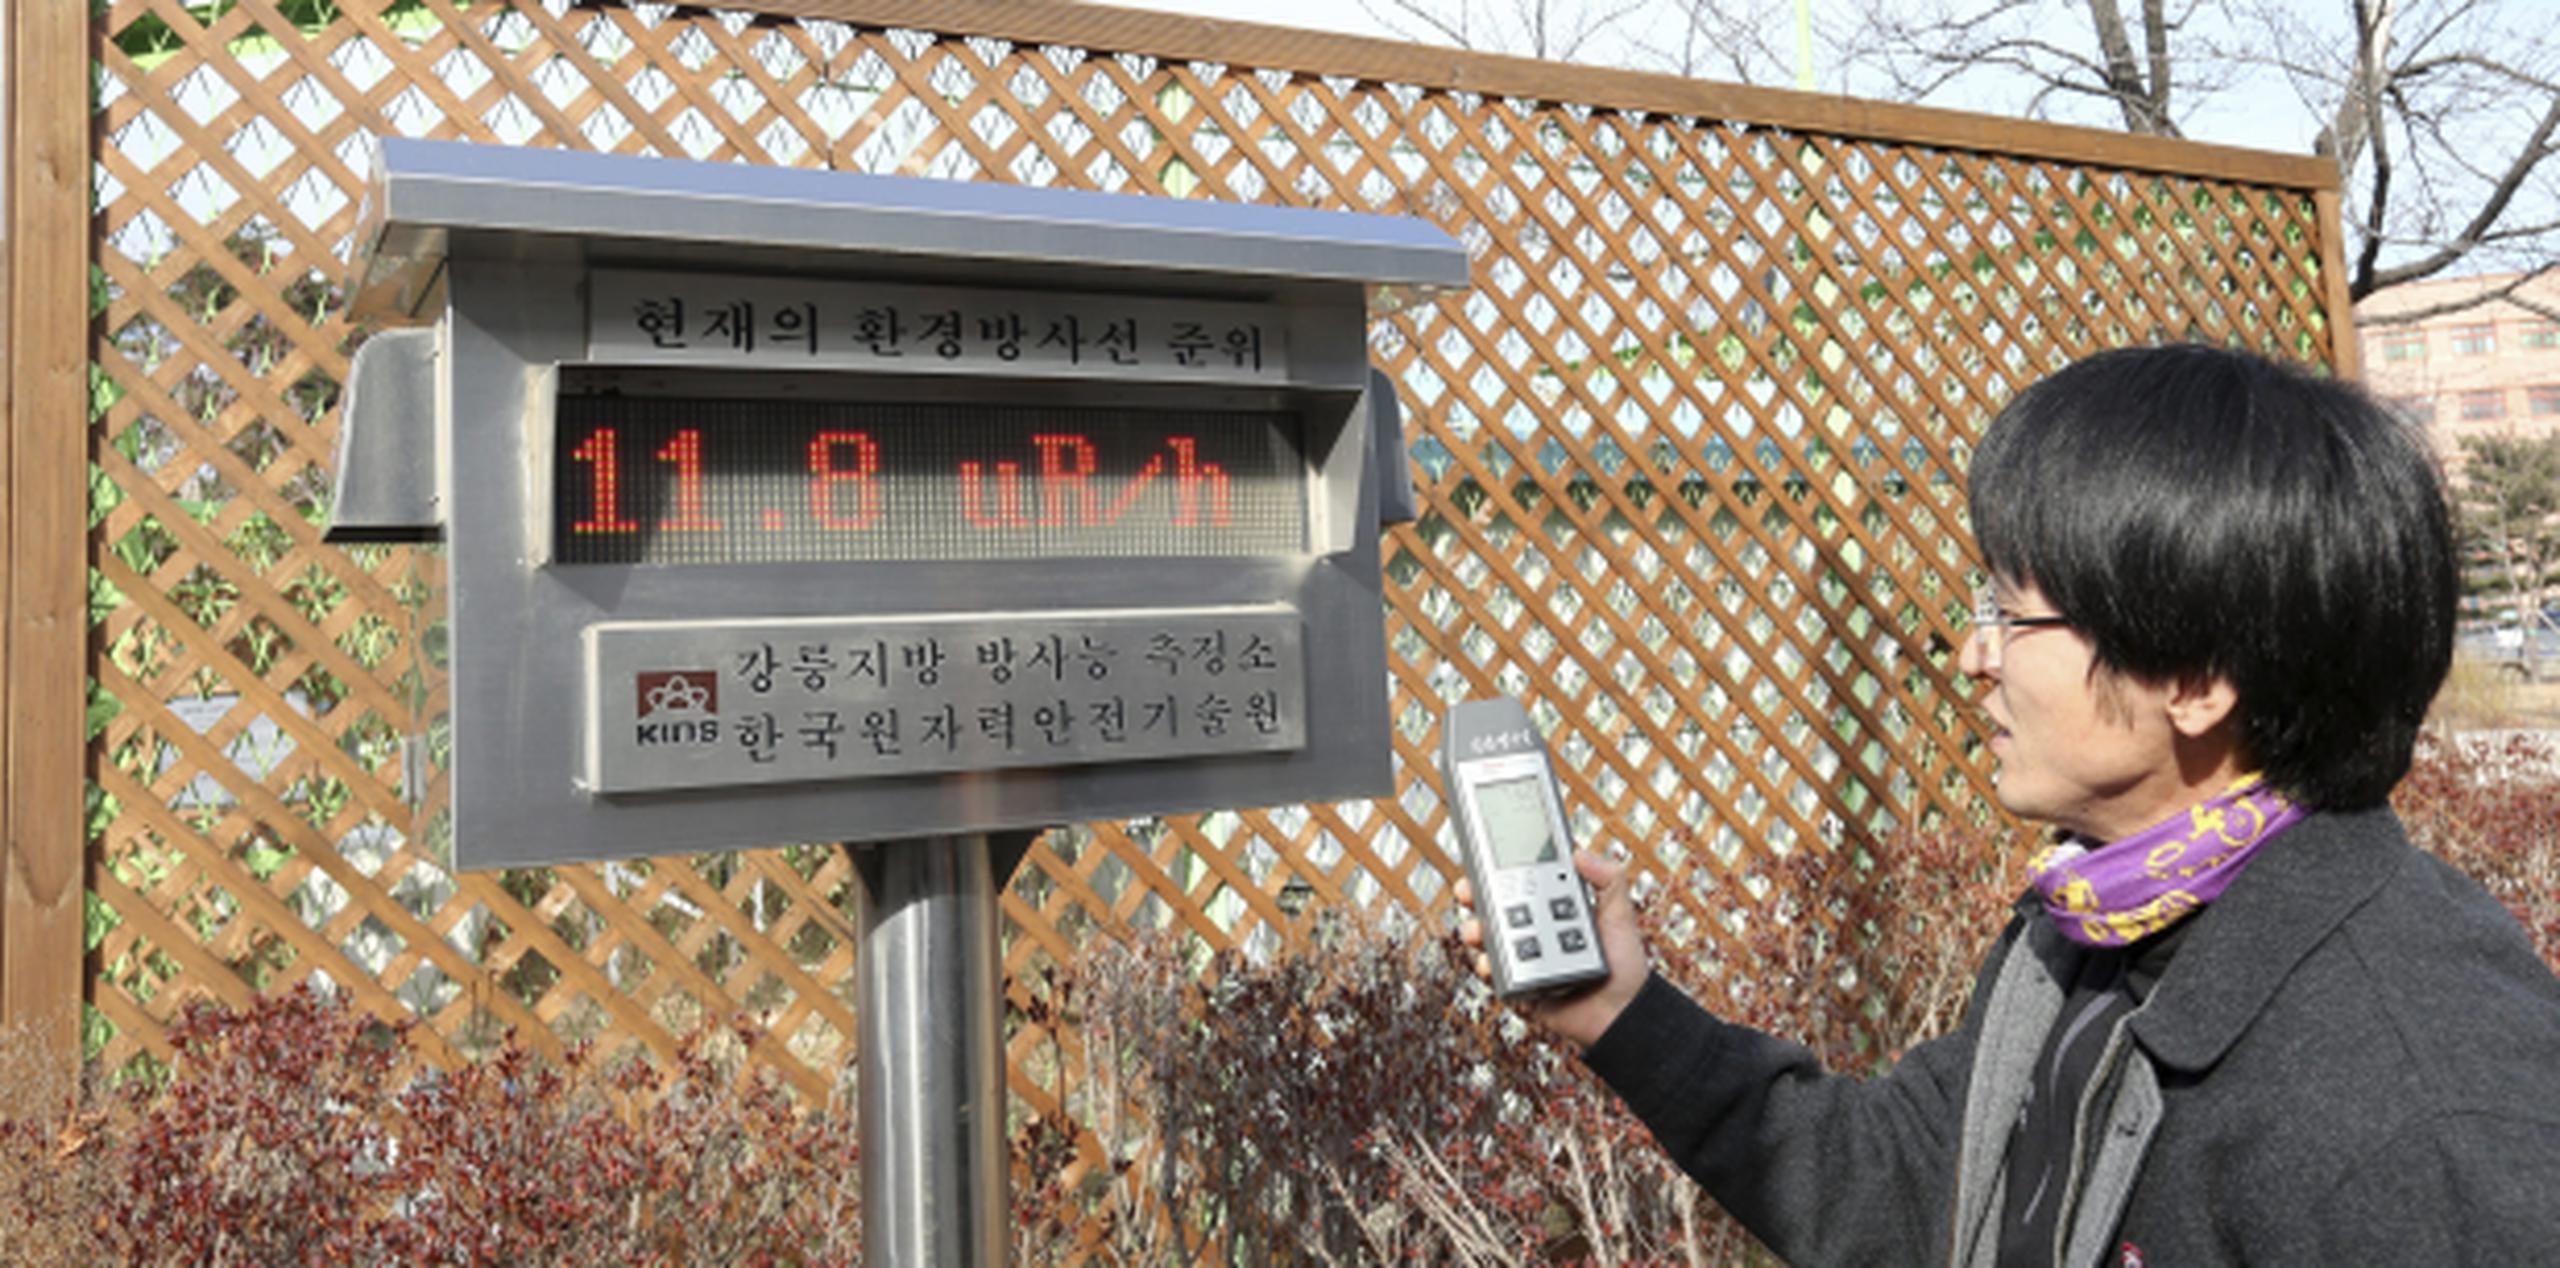 Un empleado mide los niveles de radiación en Gandneung (Corea del Sur) después de que Corea del Norte anunció que realizó su primera prueba con una bomba nuclear de hidrógeno. (EFE)